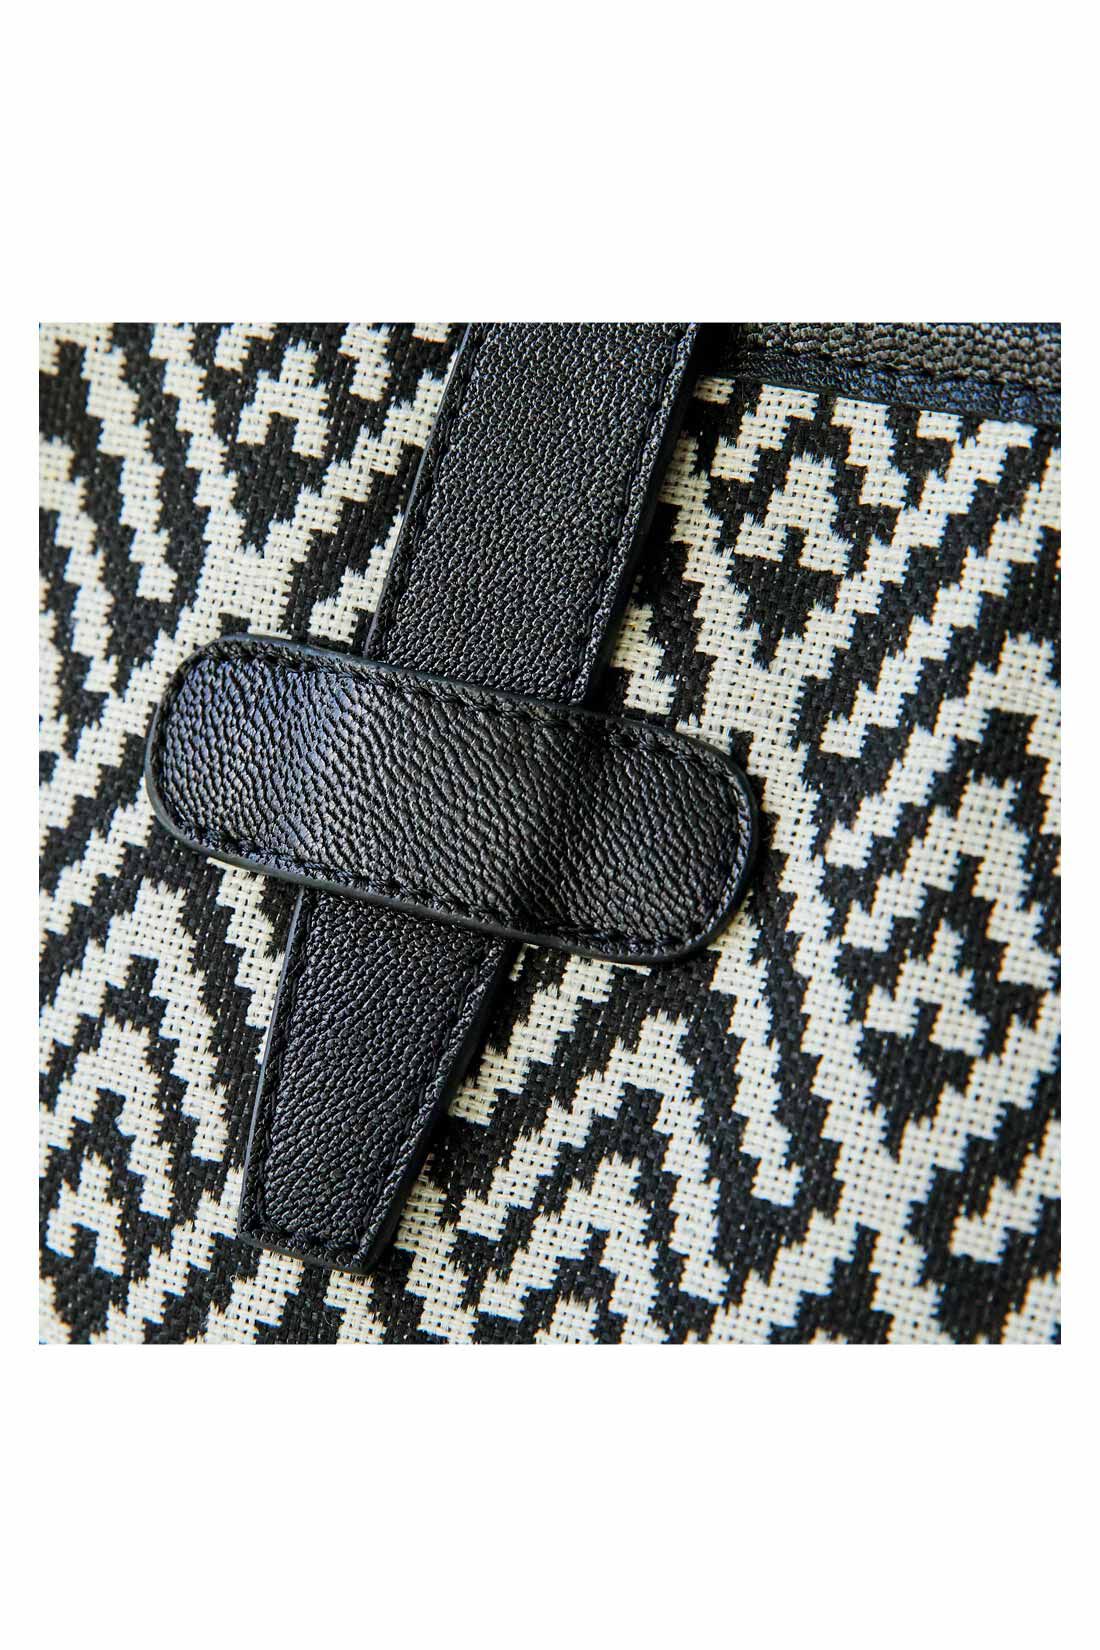 IEDIT|IEDIT[イディット]　本革遣いの織り柄スクエアトートバッグ〈オルテガブラック〉|モダンな織り柄生地のボディーにレザーのハンドルとパイピングで上質感を添えて。